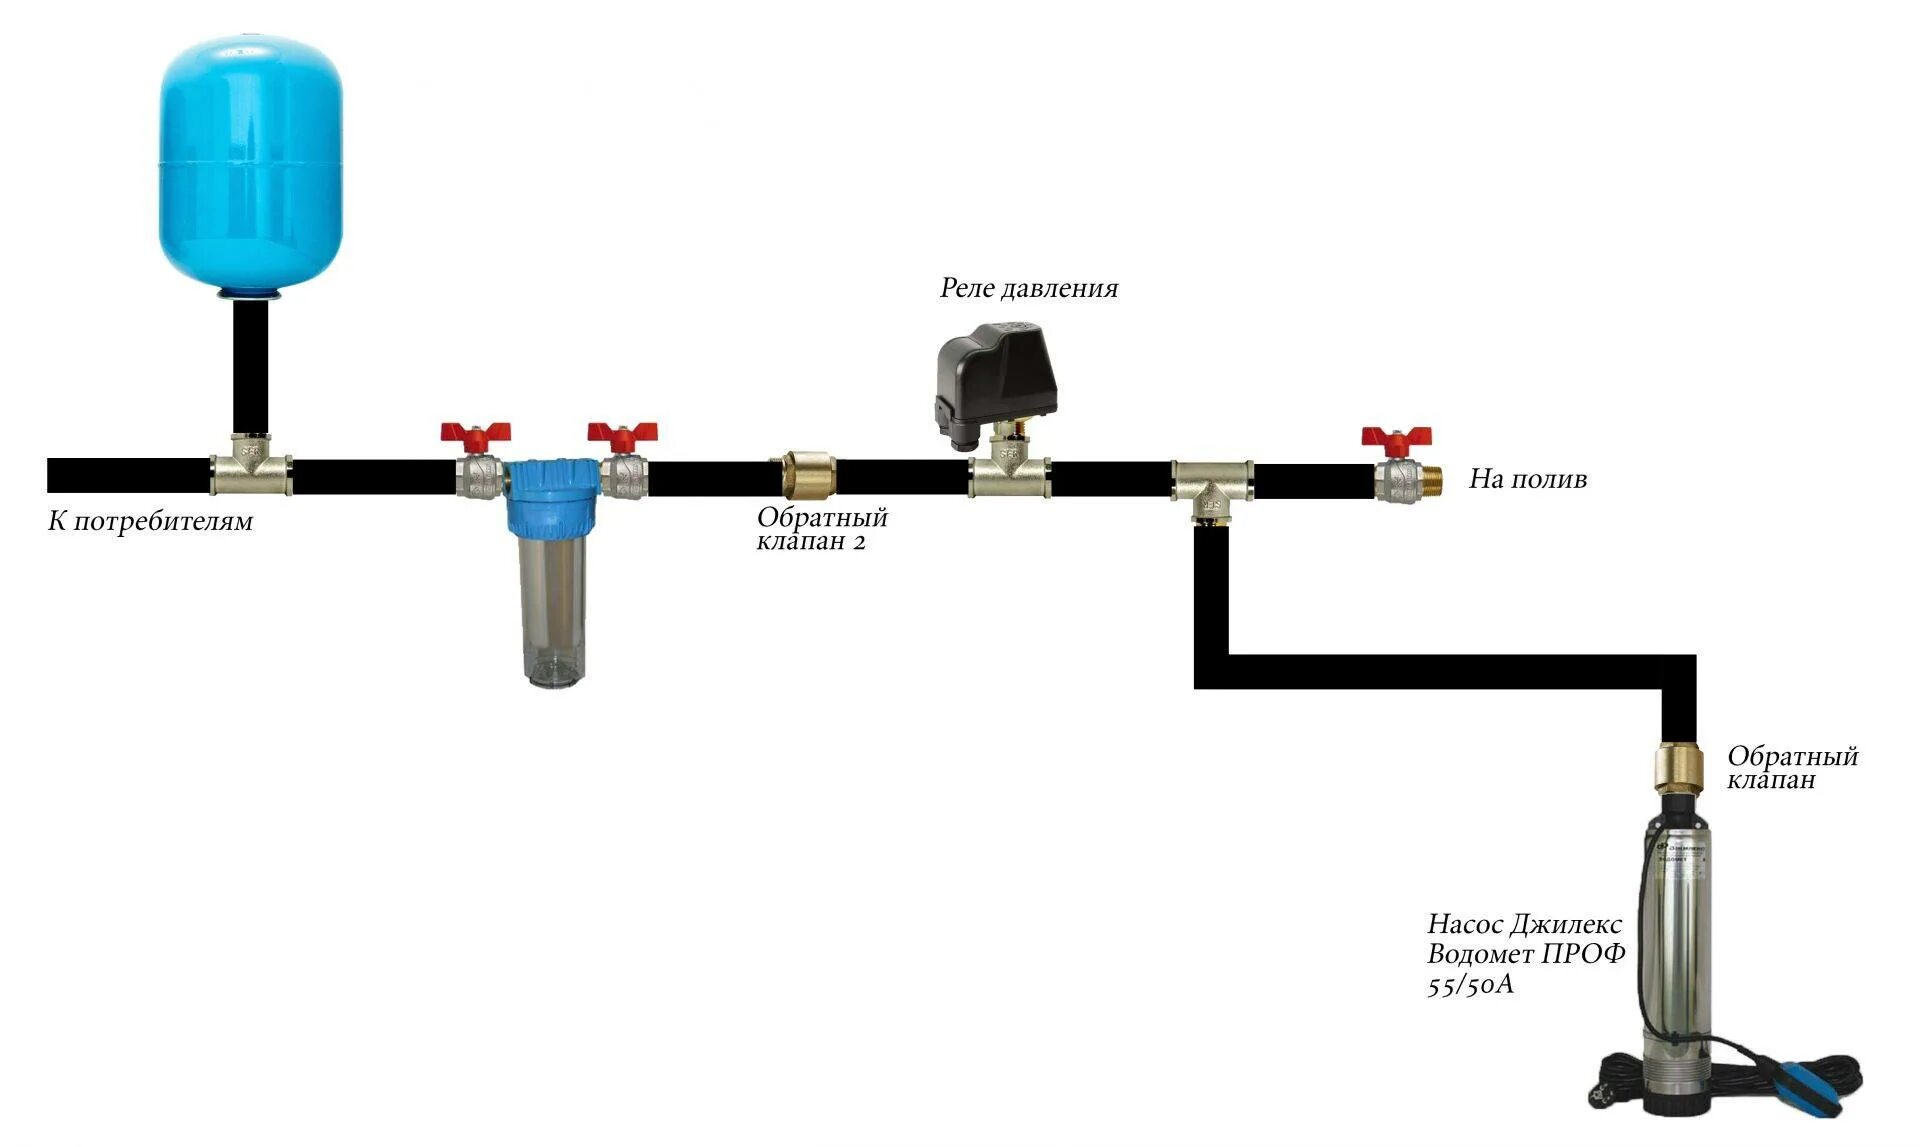 Реле давления краб. Схема включения гидроаккумулятора в систему водоснабжения. Схема подключения водопровода от колодца с гидроаккумулятором. Схема подключения водопровода из скважины. Схема подключения гидроаккумулятора в систему водопровода.